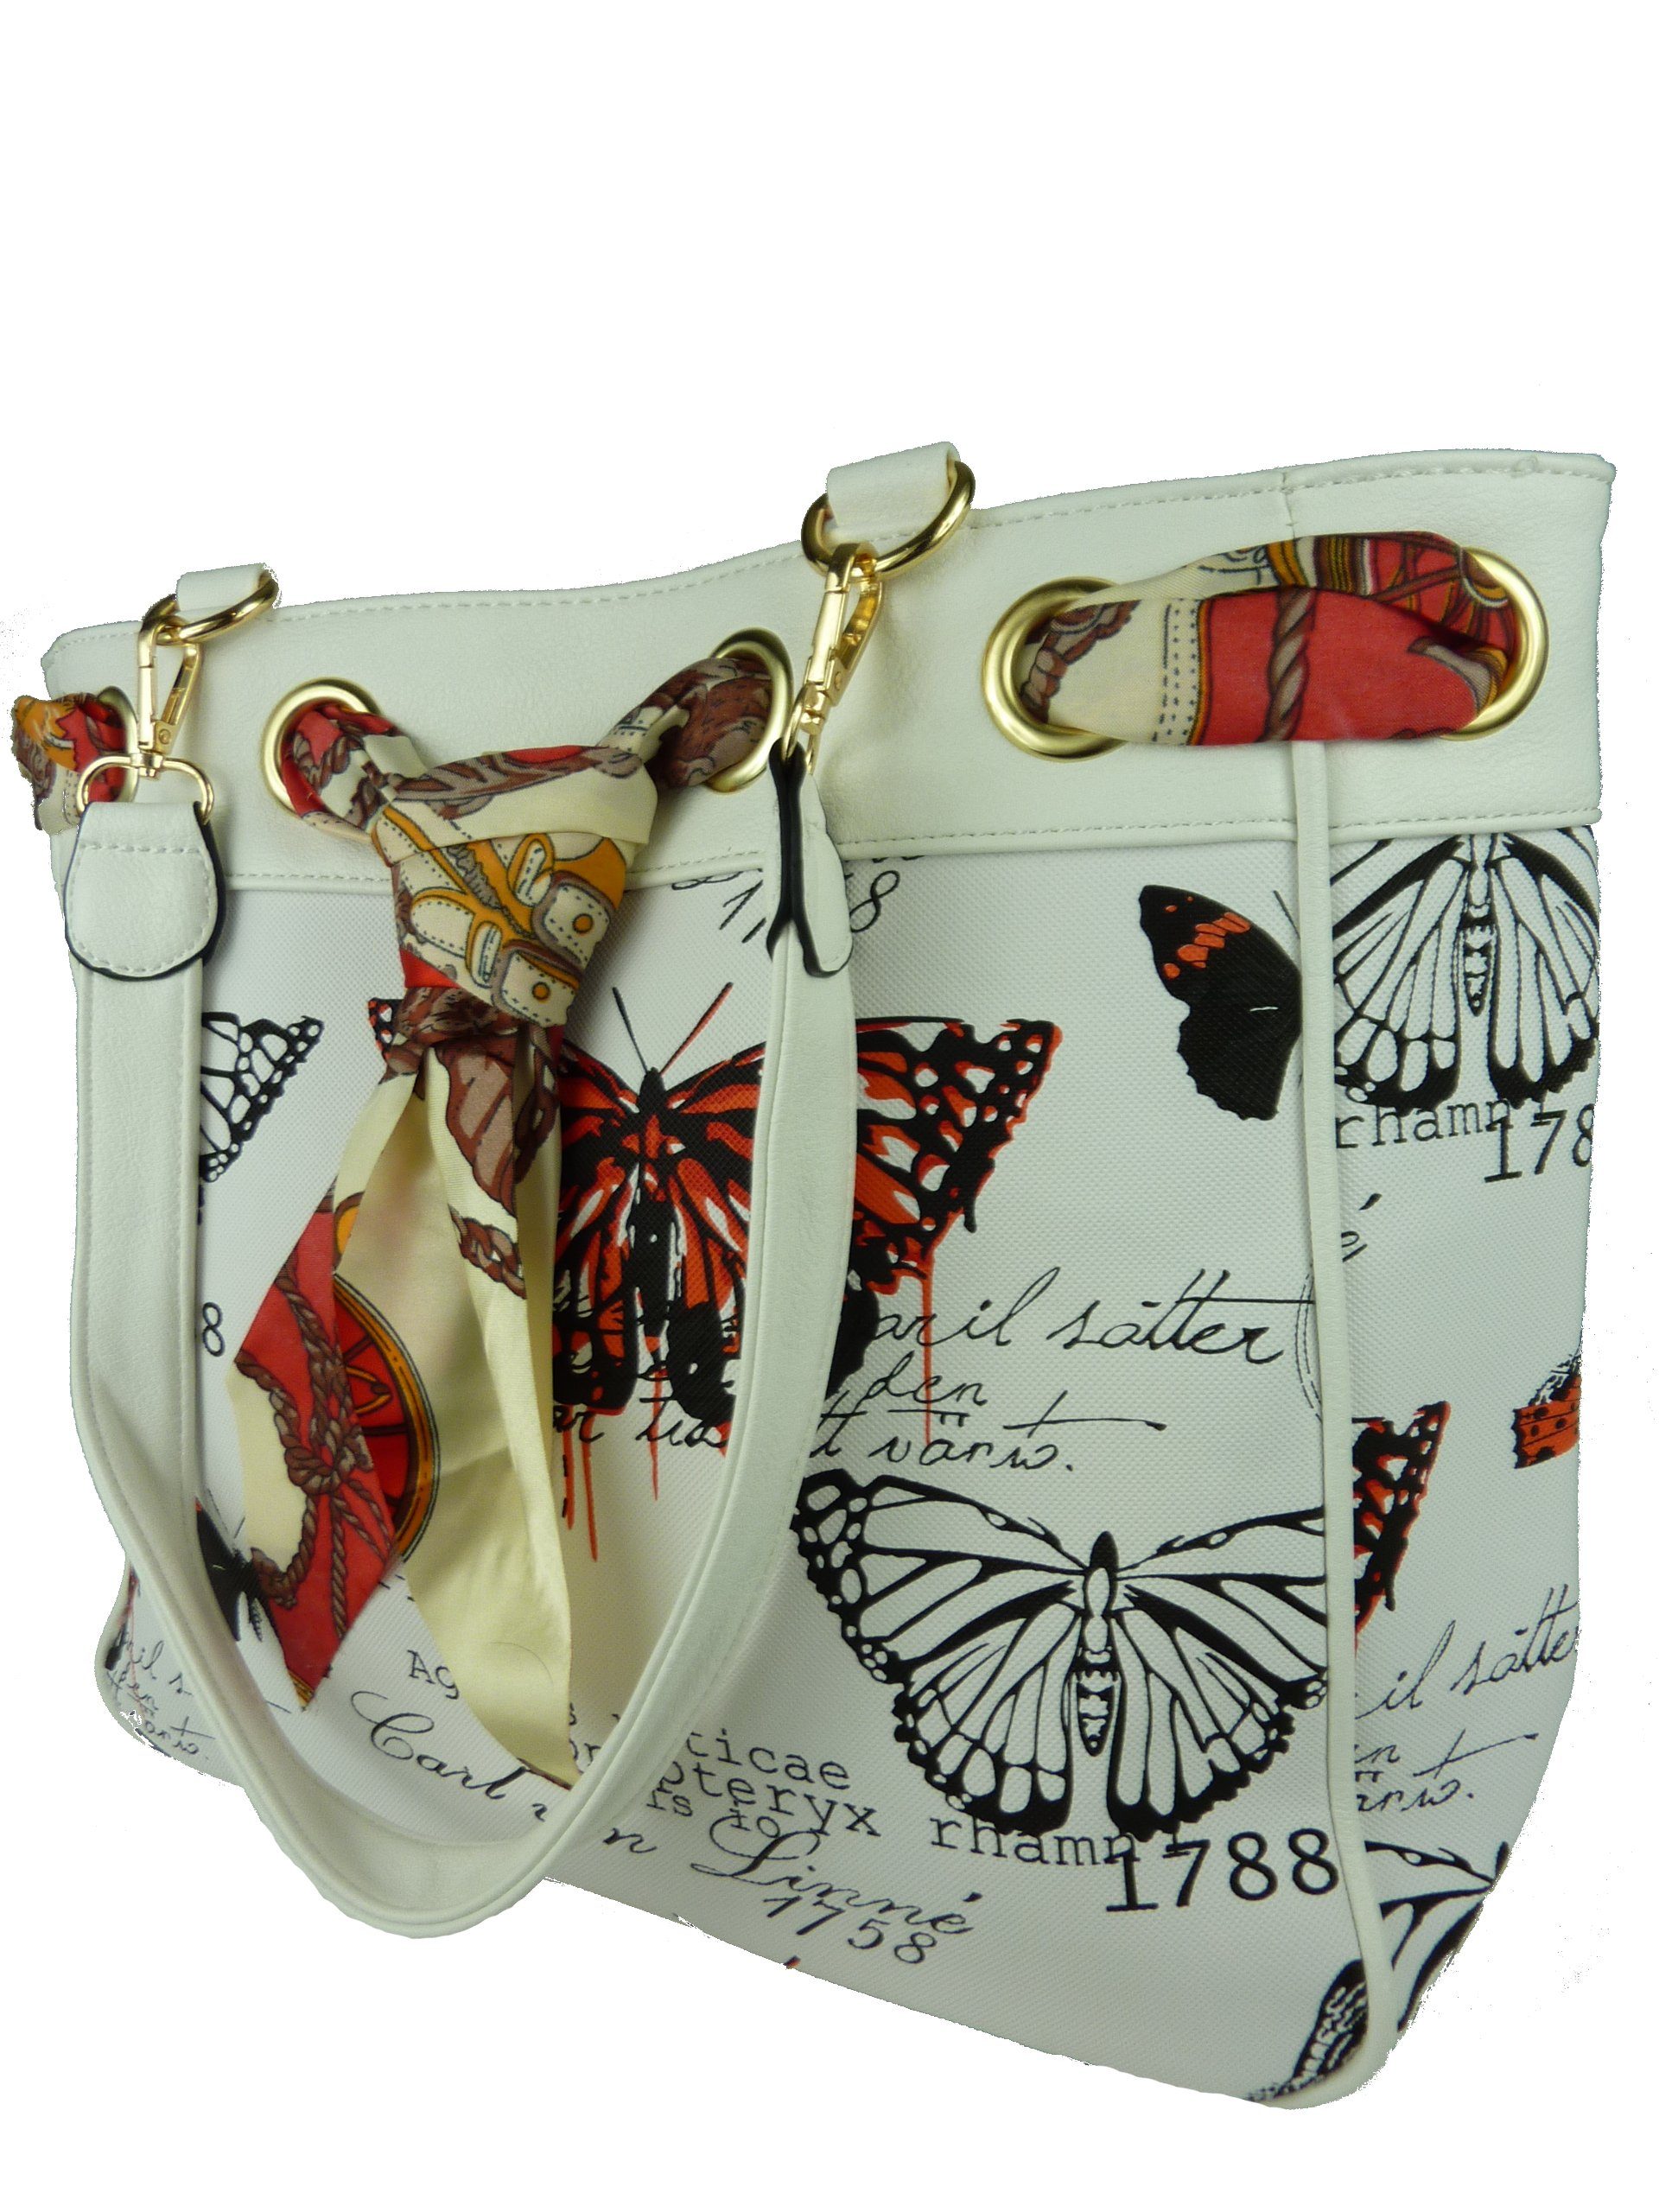 Taschen4life Shopper Damen Shoppertasche orange 5817, moderne casual im - Vintage Stil Schultertasche große Butterfly